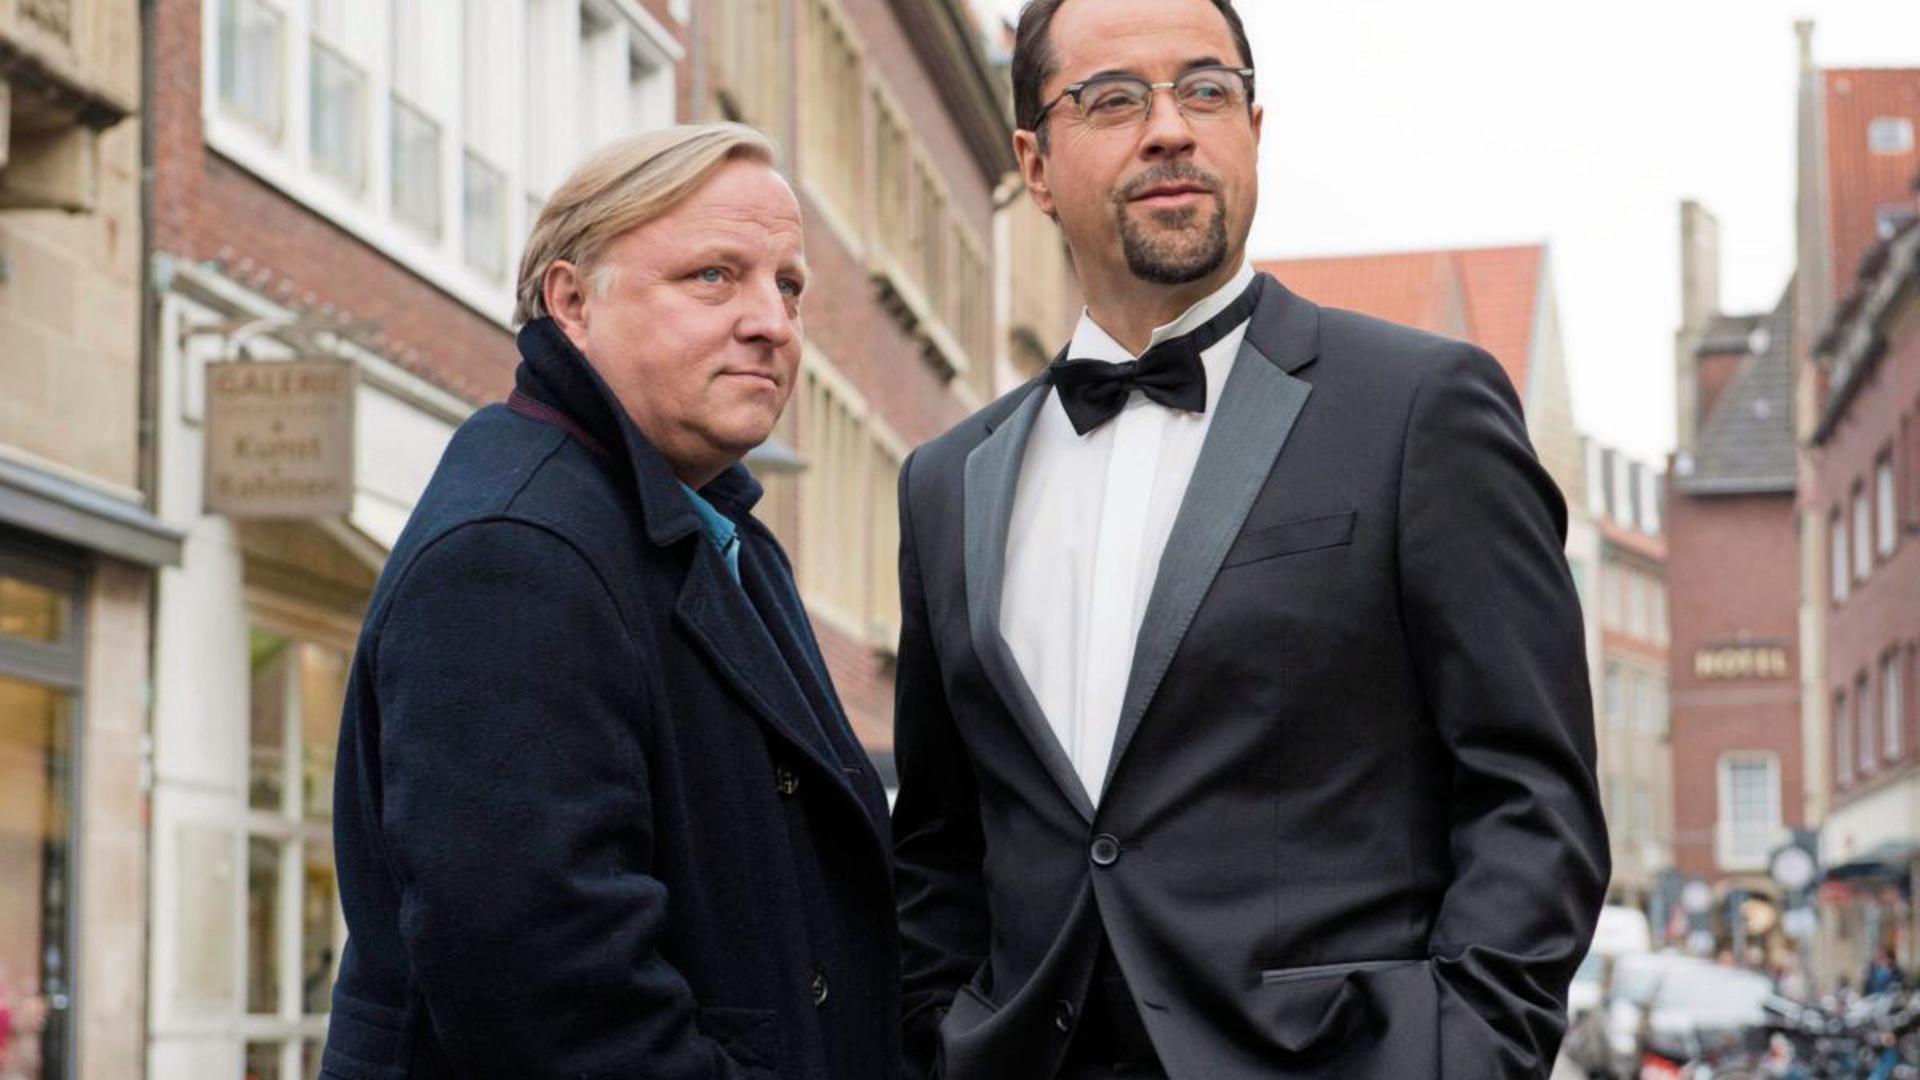 Beliebte Rollen im Münchner Tatort sind Kriminalhauptkommissar Frank Thiel (links) und Rechtsmediziner Karl-Friedrich Boerne.